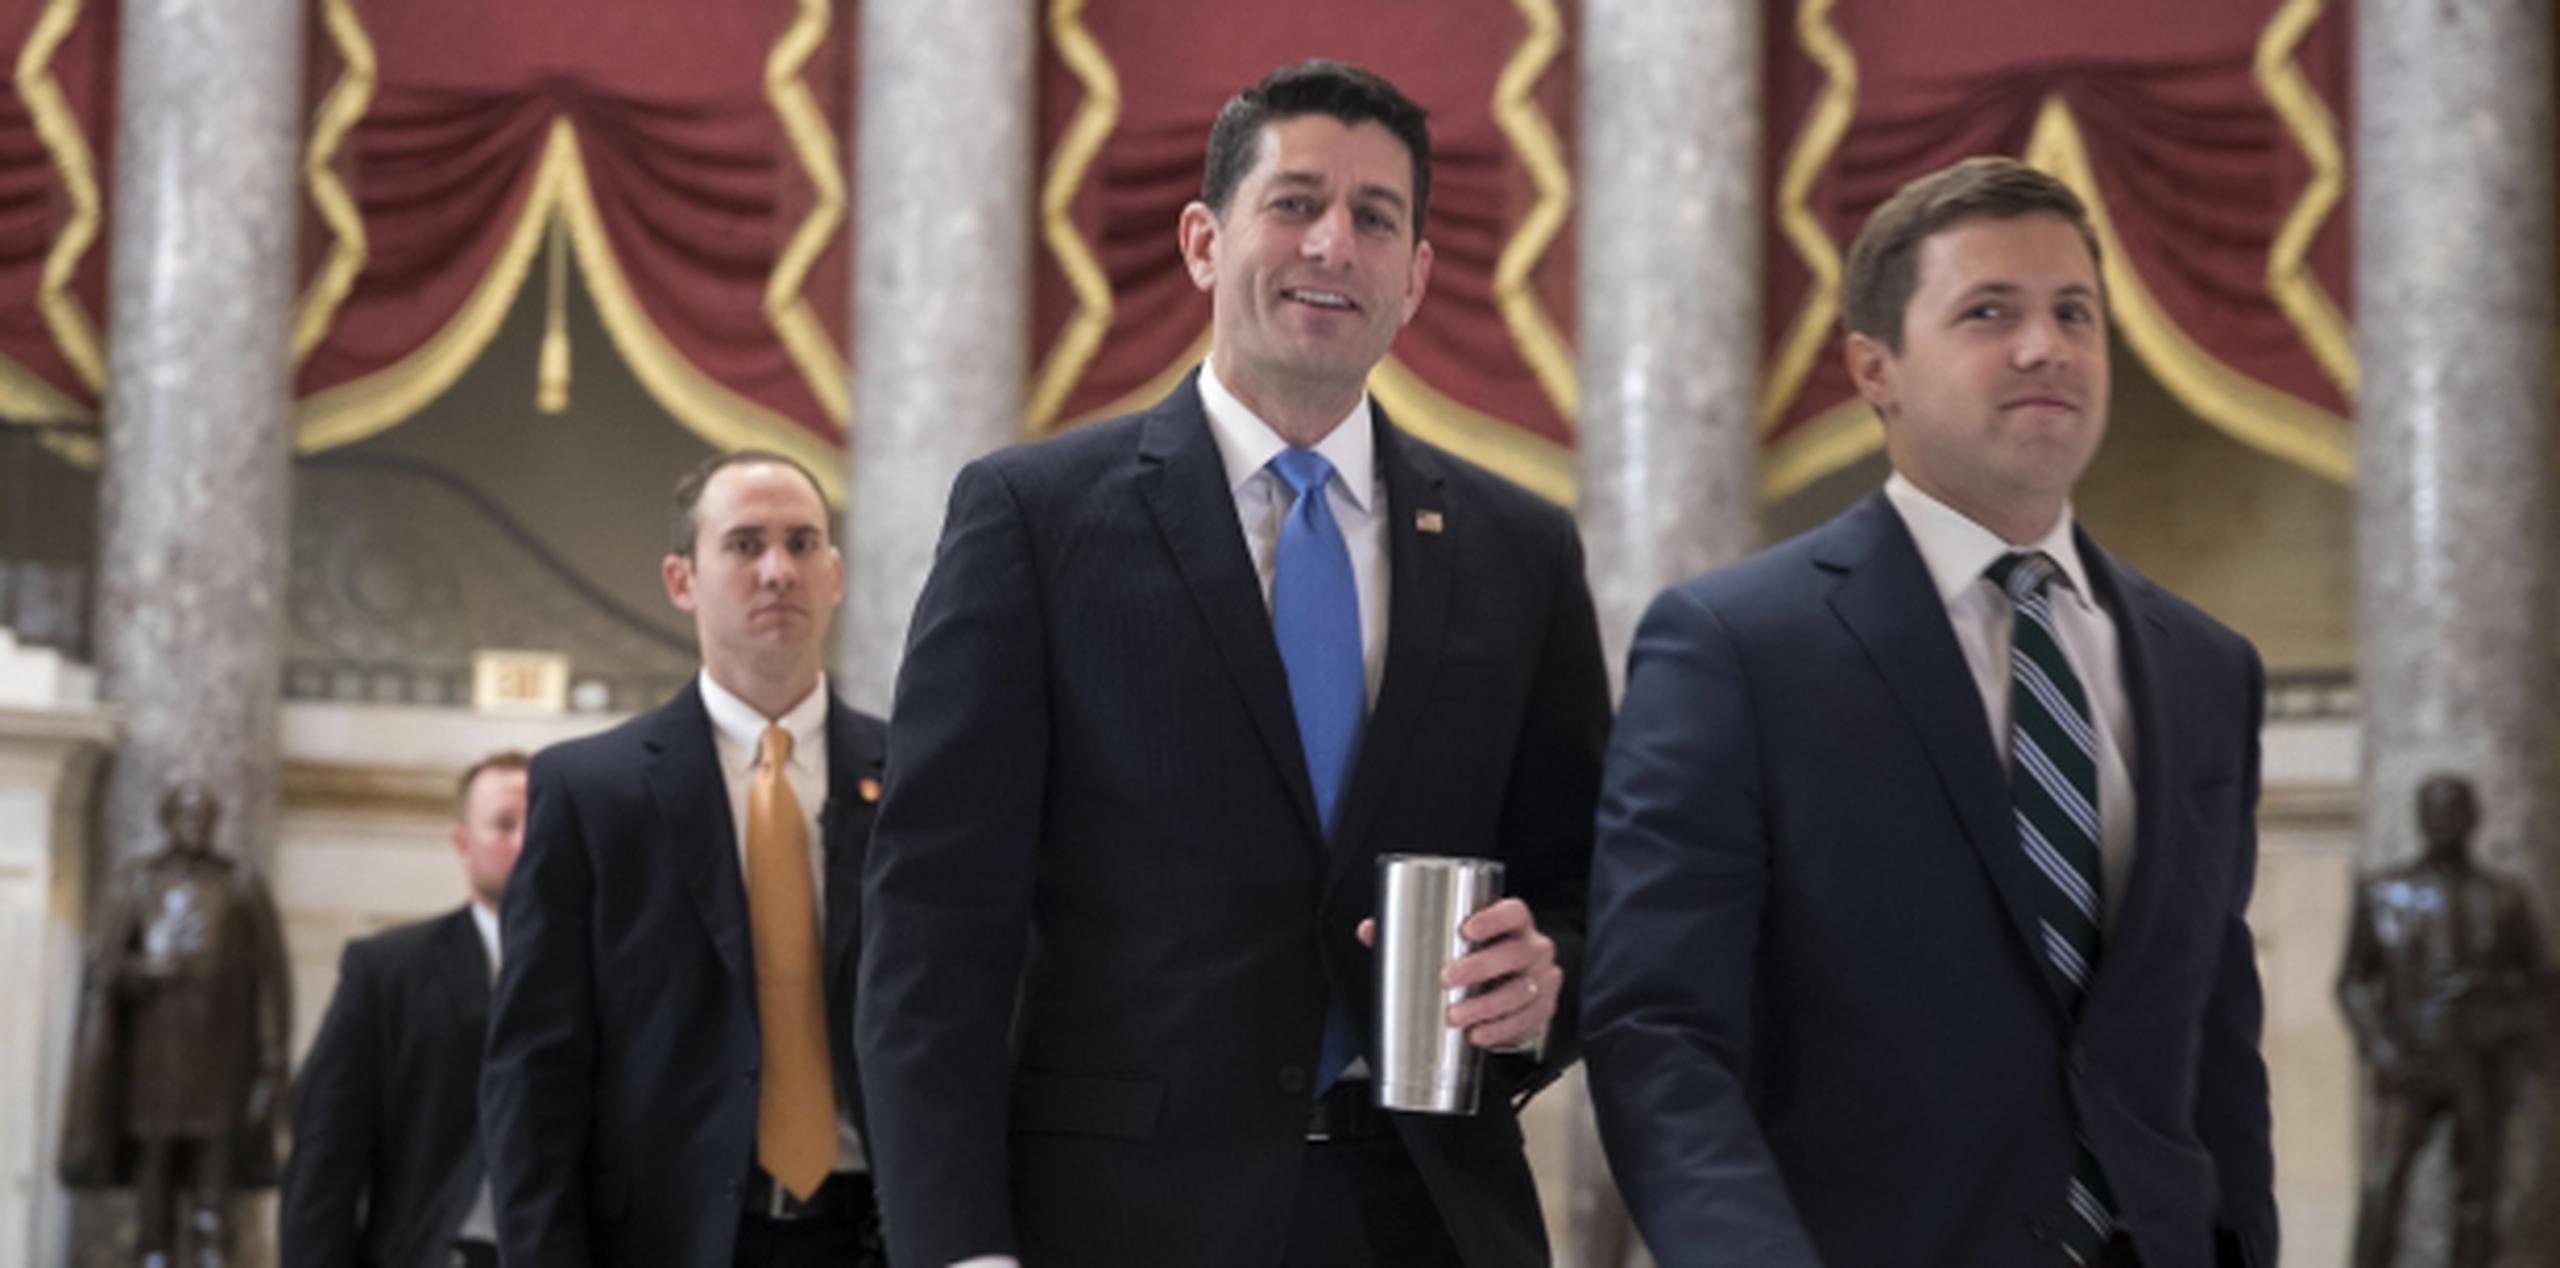 El presidente de la Cámara Baja estadounidense, Paul Ryan, acompañado de miembros de seguridad. (EFE / Shawn Thew)